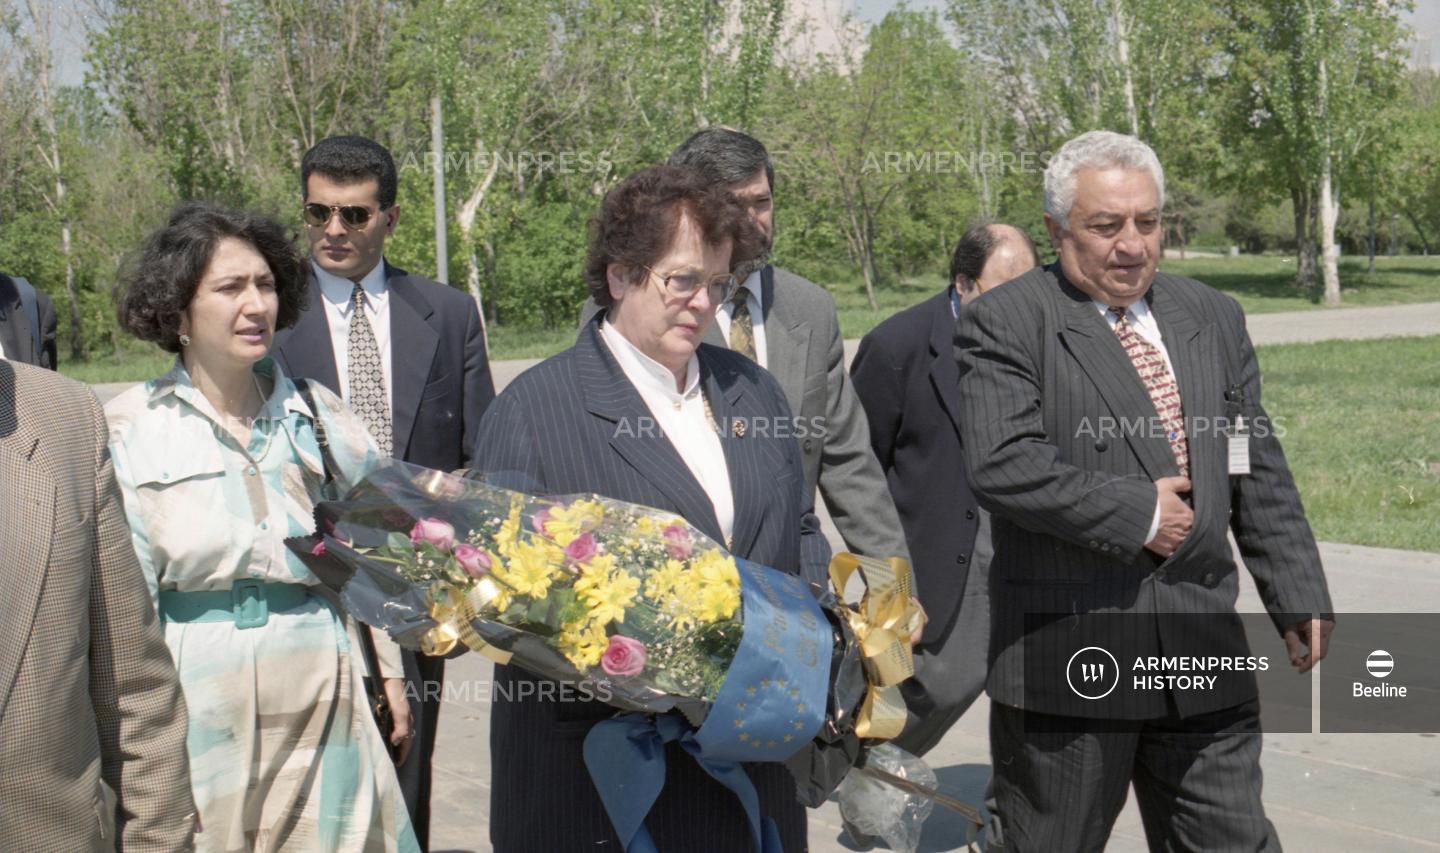 ԵԽԽՎ նախագահ Լենի Ֆիշերի այցը Հայաստան 1997 թվականին